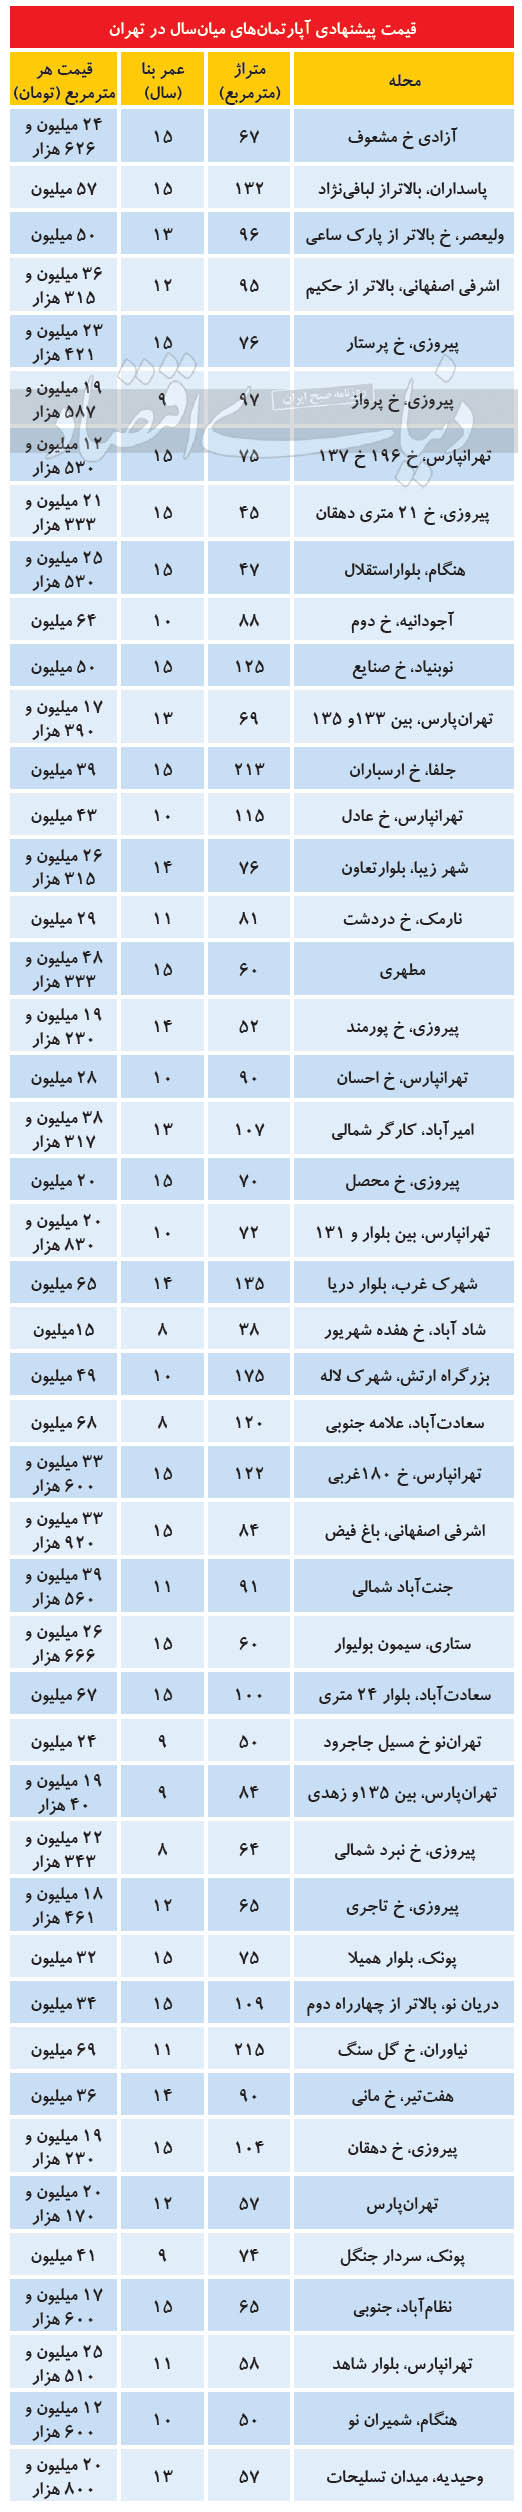 قیمت پیشنهادی آپارتمان میان سال در تهران